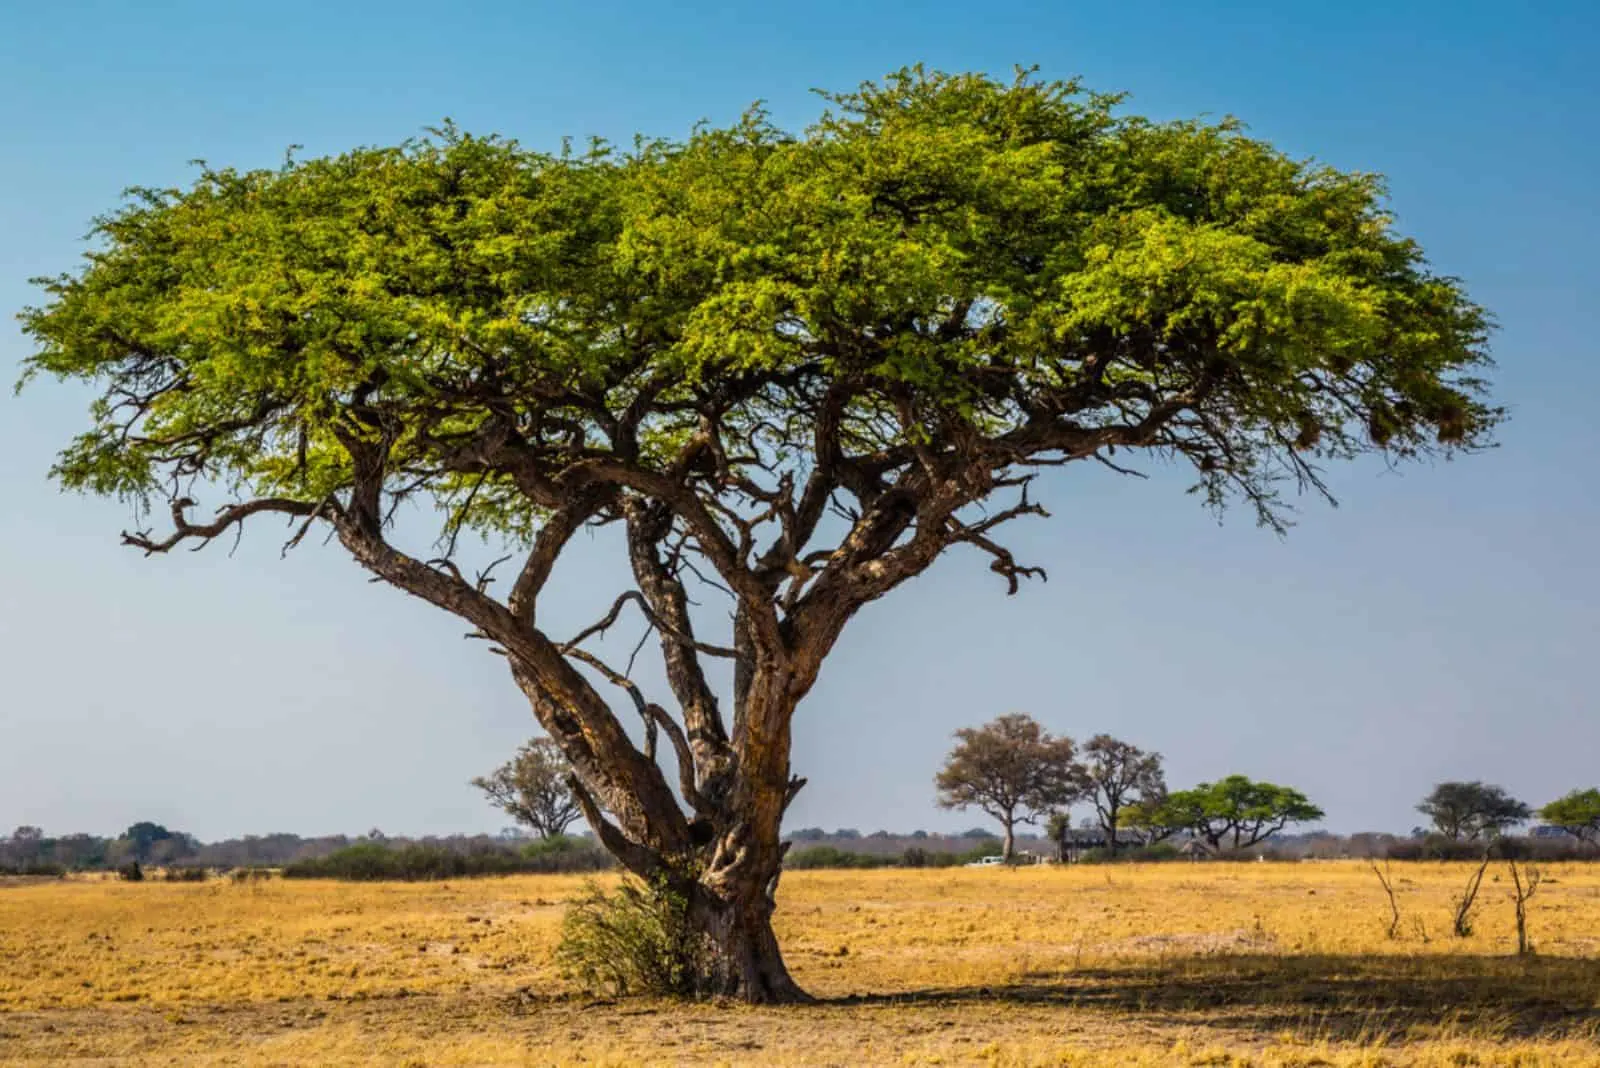 An acacia tree 